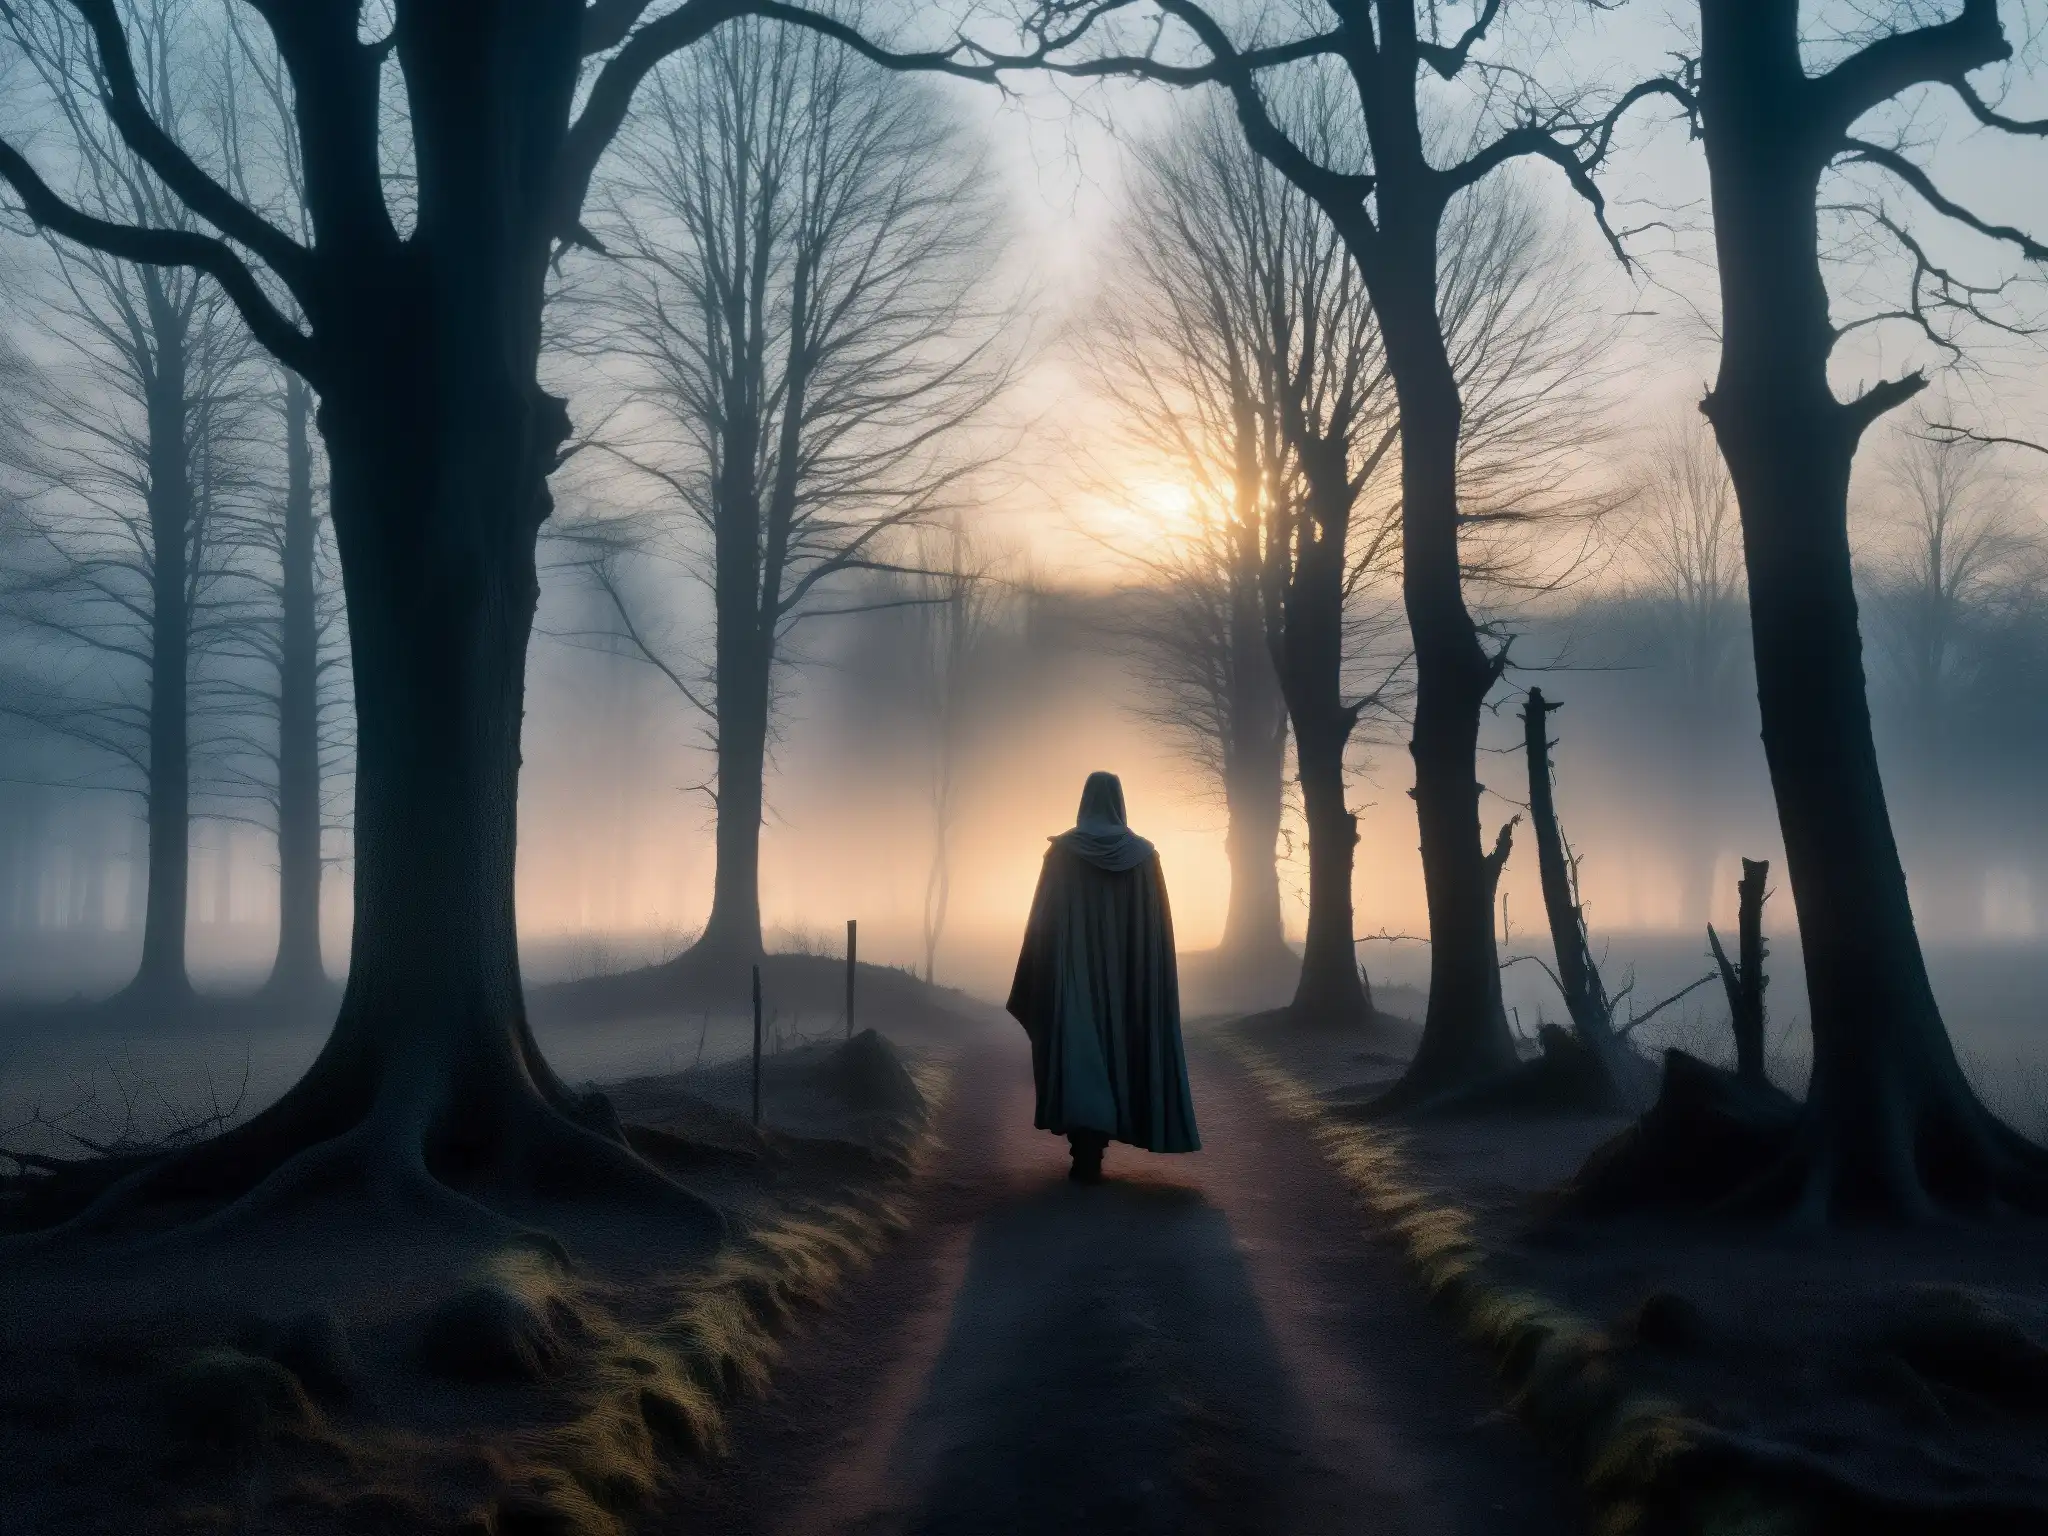 El misterioso encuentro con el Silbón en el oscuro bosque de orígenes, evoca una atmósfera inquietante